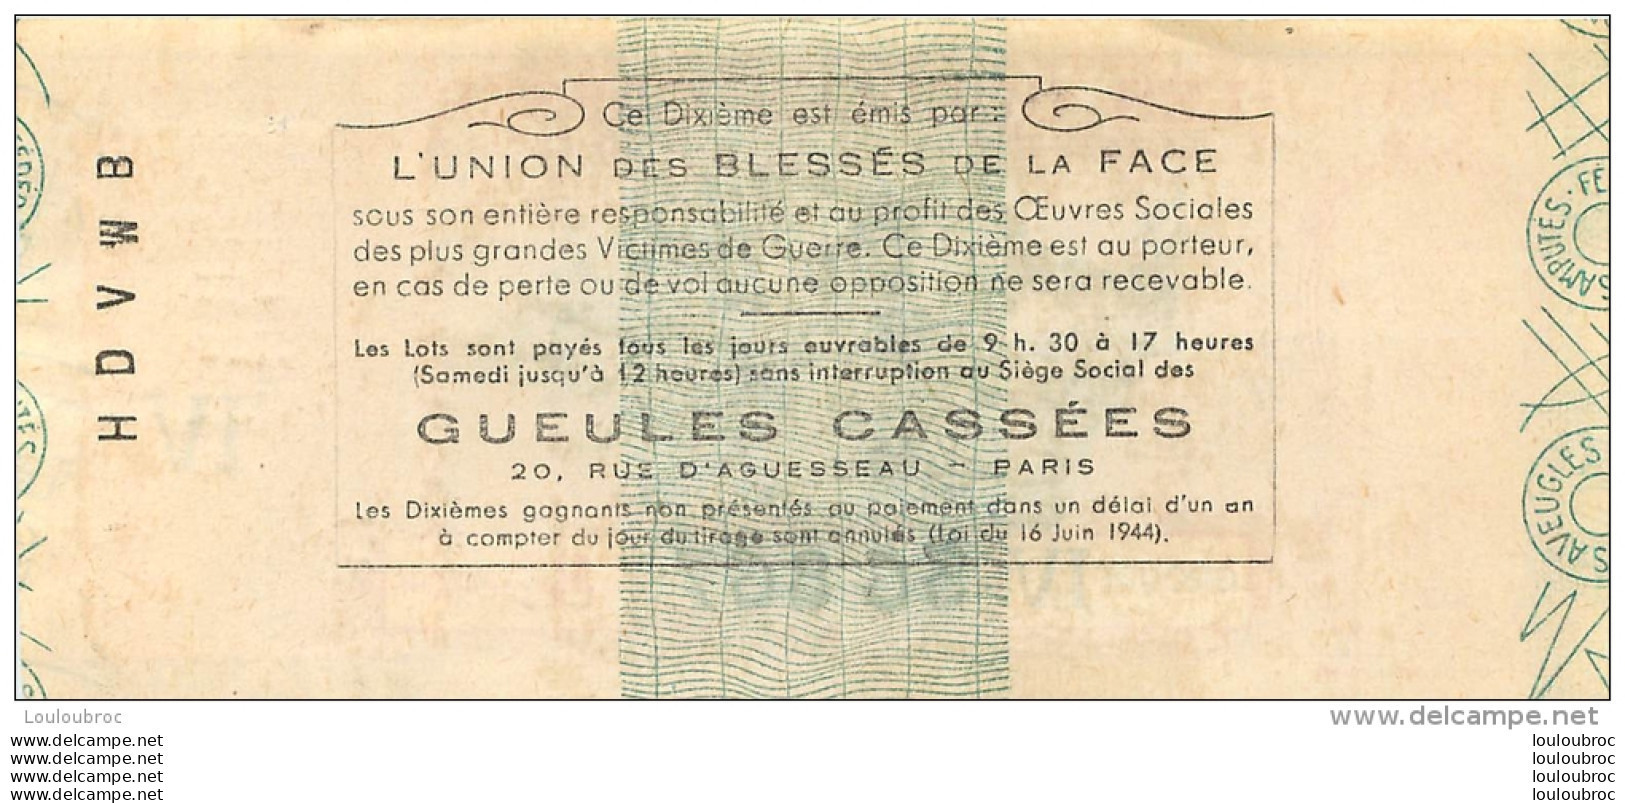 BILLET DE LOTERIE NATIONALE 1960  LES GUEULES CASSEES - Billetes De Lotería